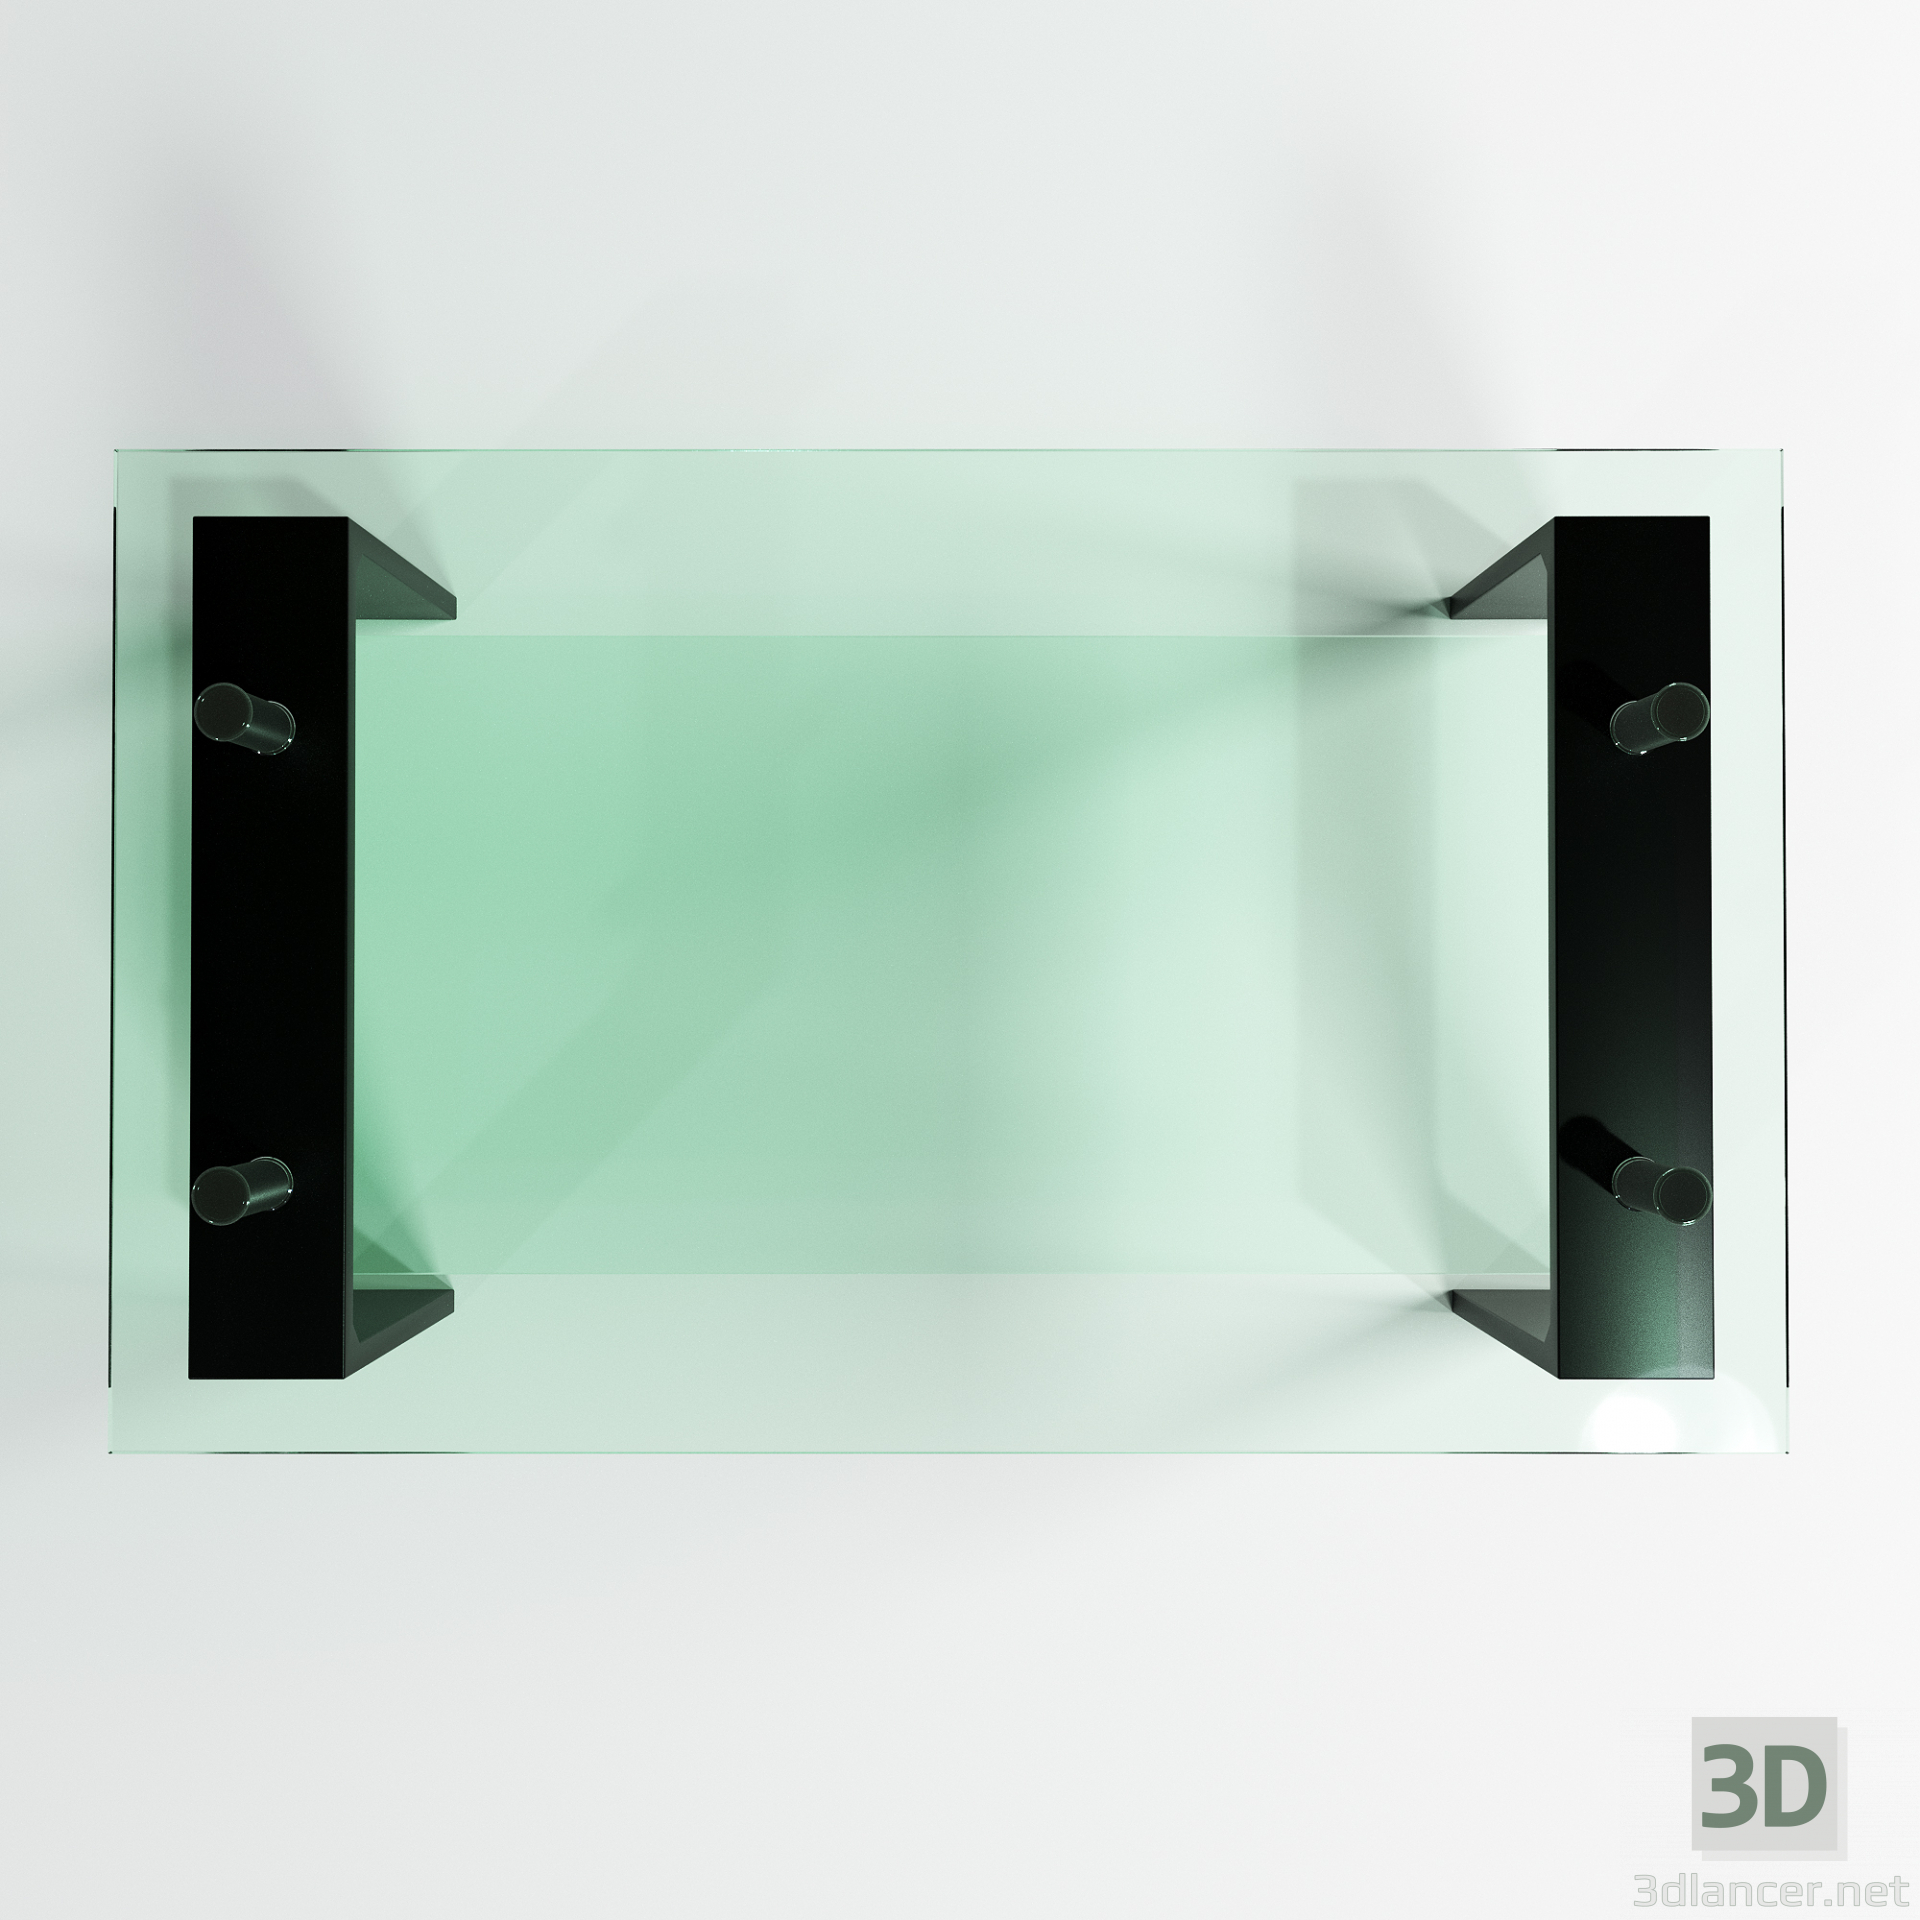 Glas tisch 3D-Modell kaufen - Rendern